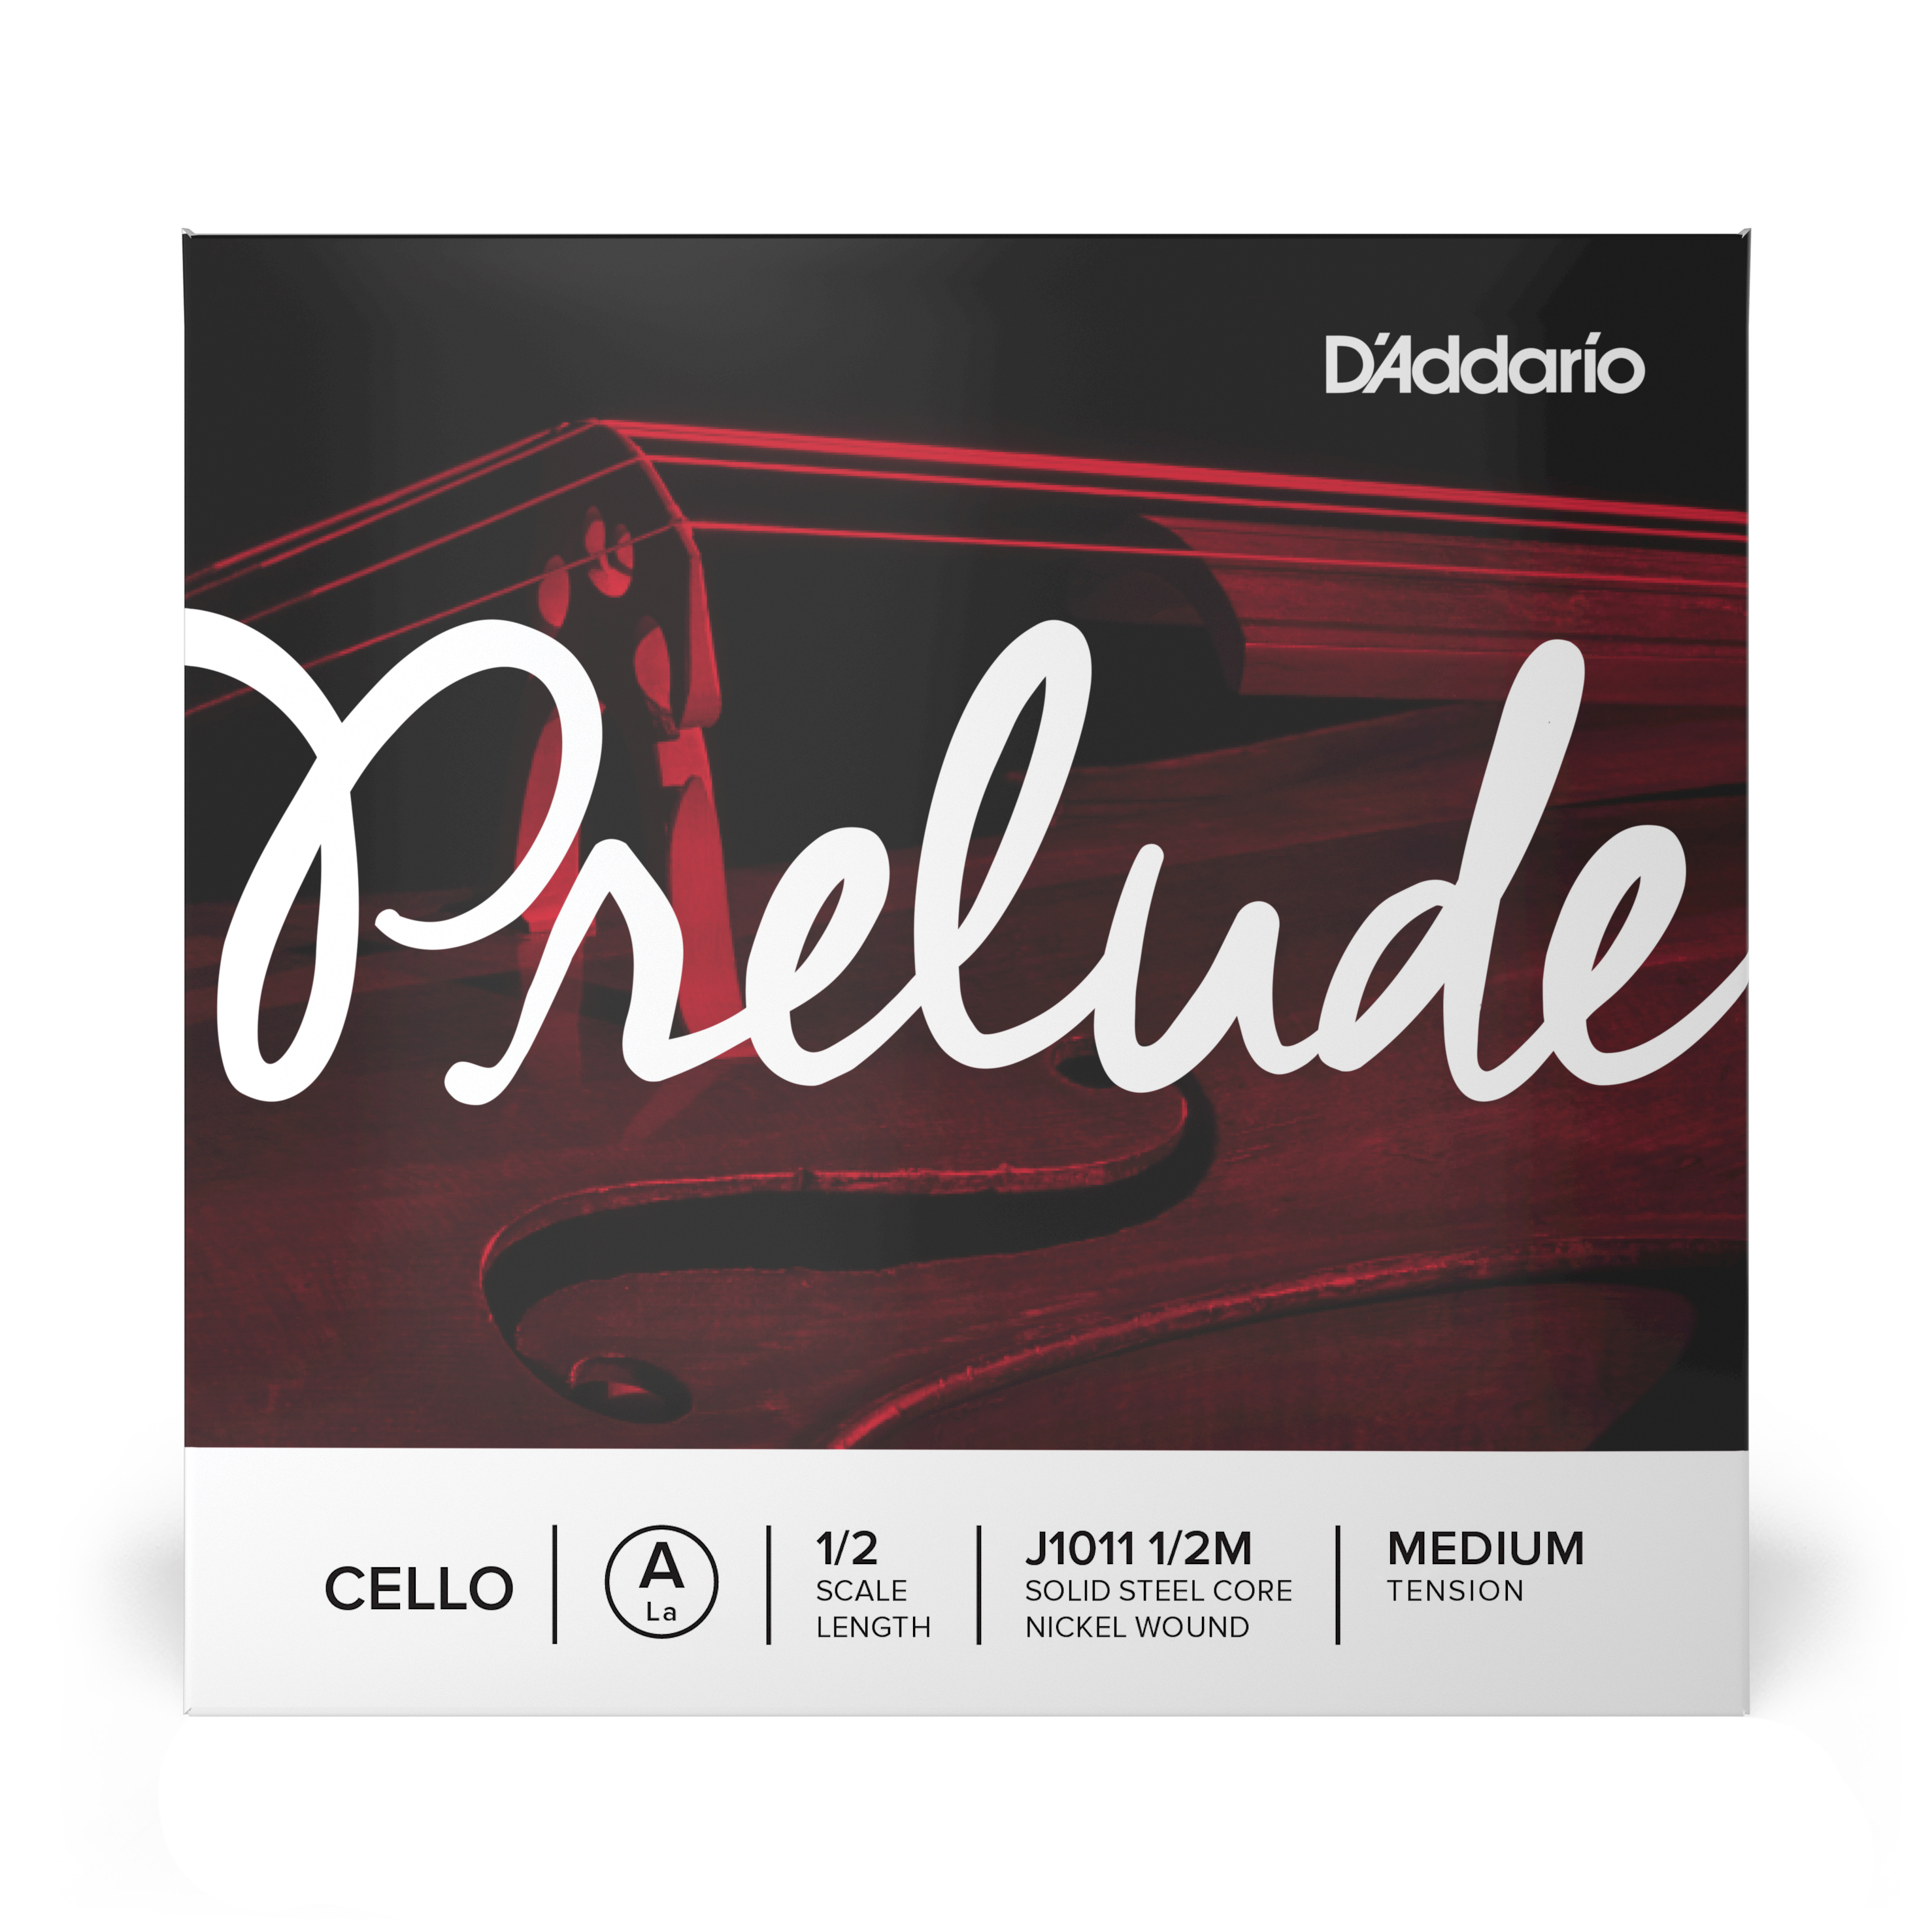 Daddario orchestral it J1011 1/2m corda singola la d'addario prelude per violoncello, scala 1/2, tensione media